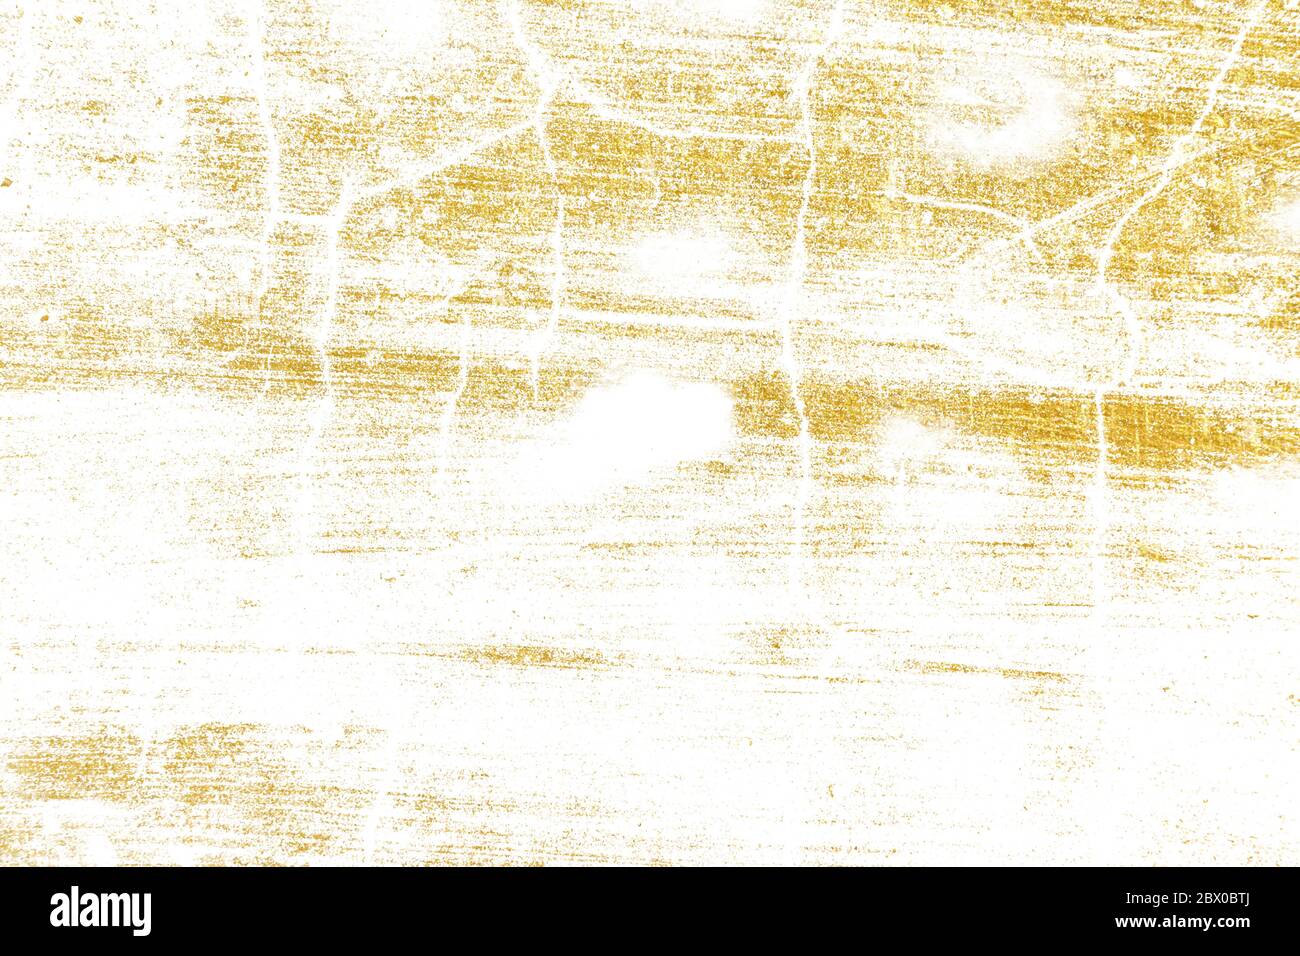 L'oro spruzzi la texture. Elemento di disegno della corsa del pennello. Grunge sfondo dorato motivo di crepe, graffi, scheggiature, macchie, macchie di inchiostro, linee Foto Stock